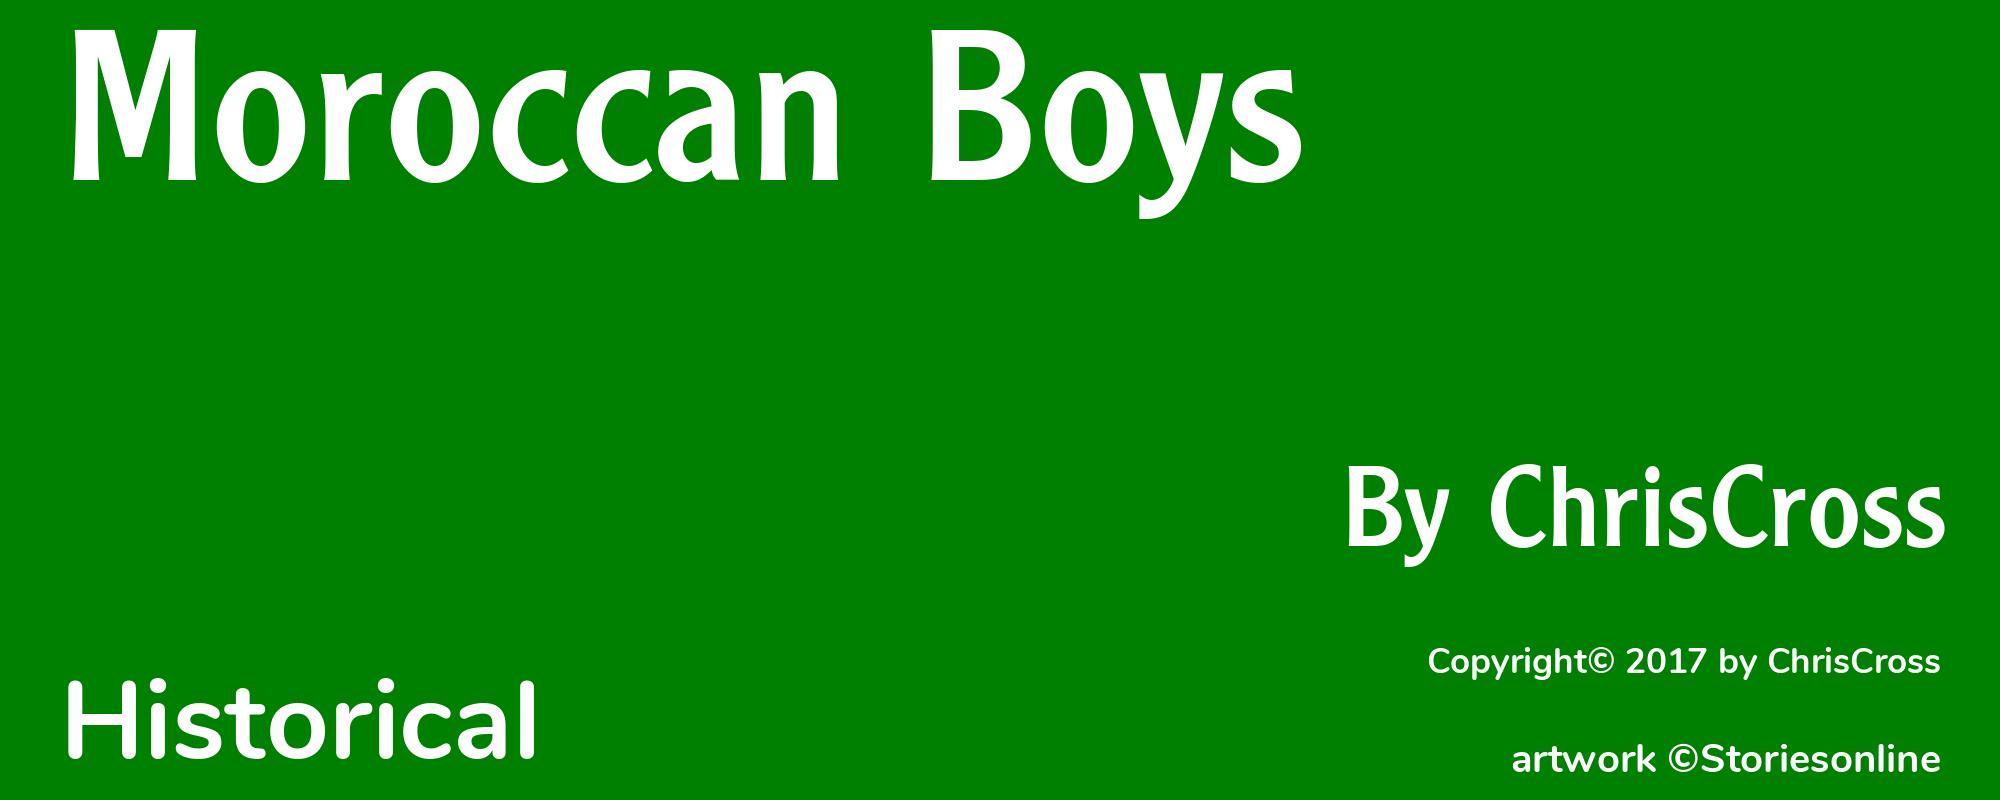 Moroccan Boys - Cover